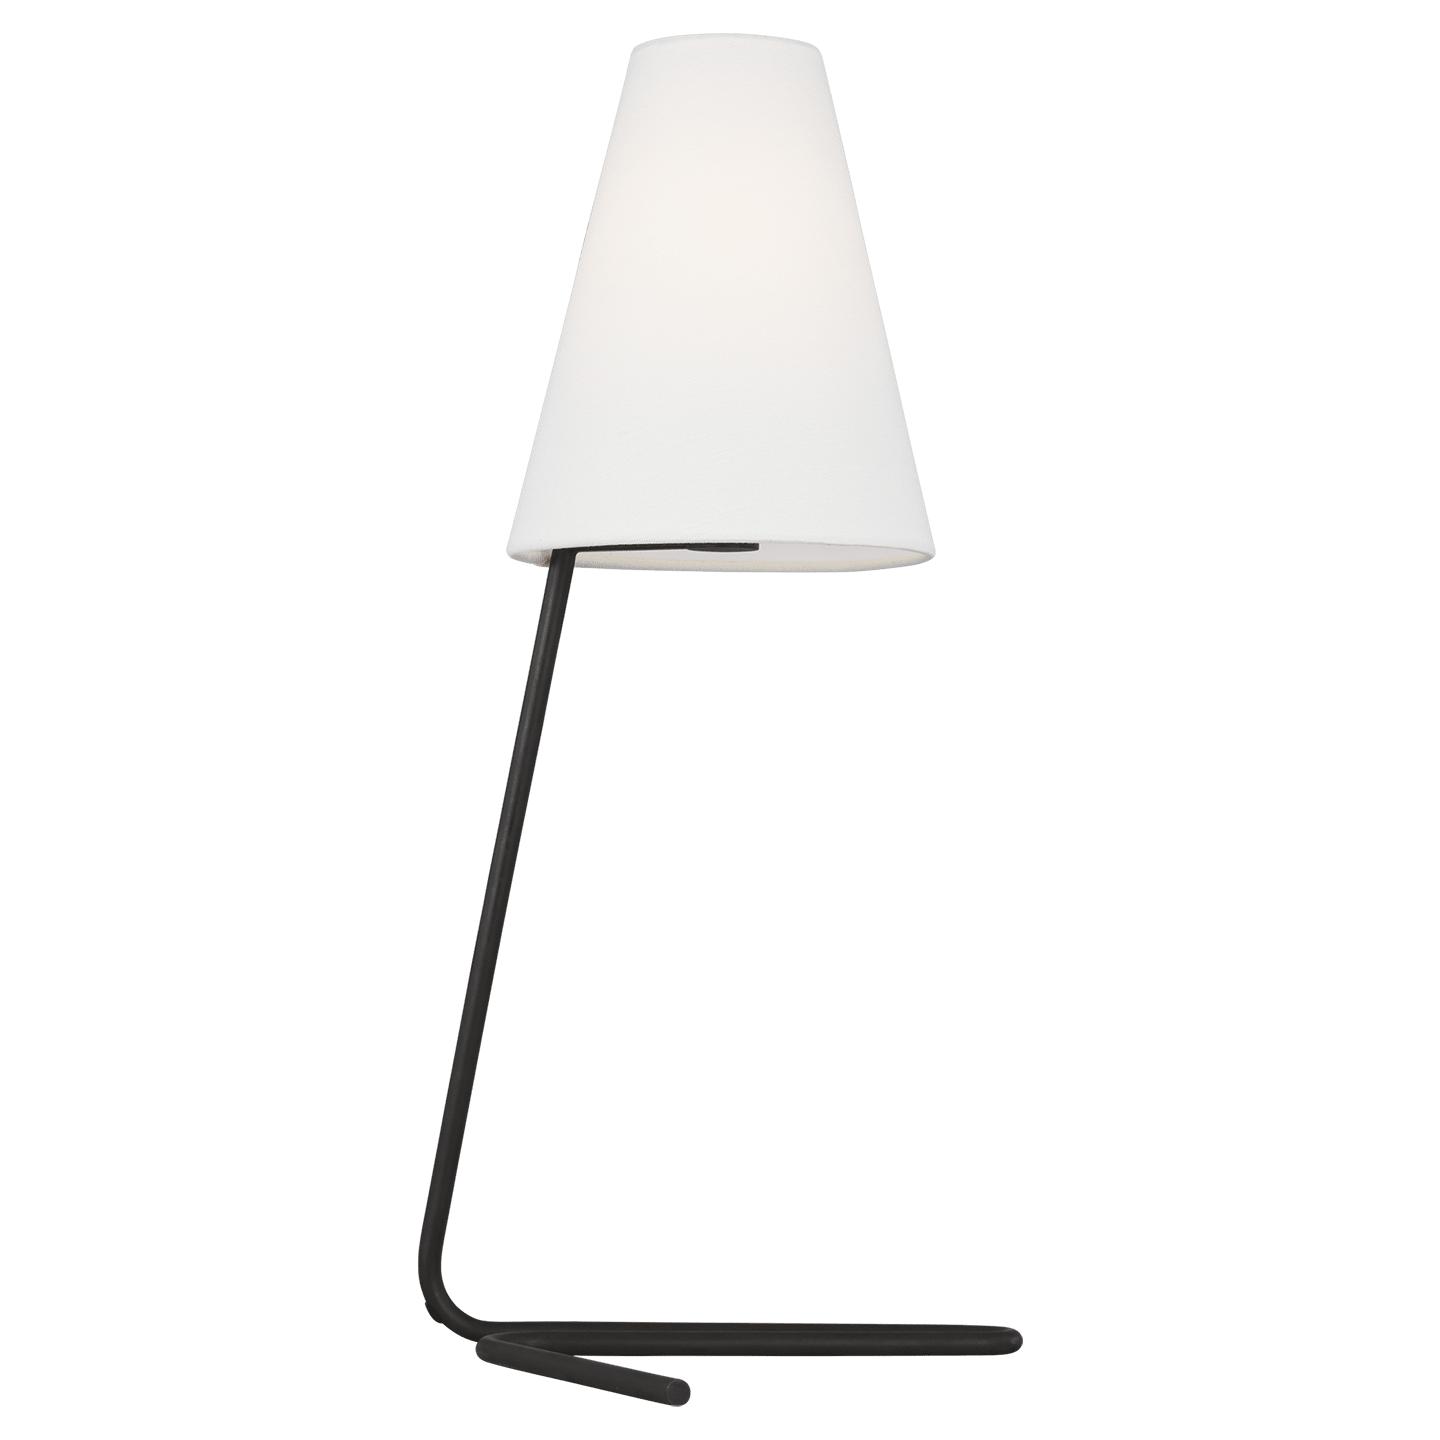 Купить Настольная лампа Jaxon Table Lamp в интернет-магазине roooms.ru